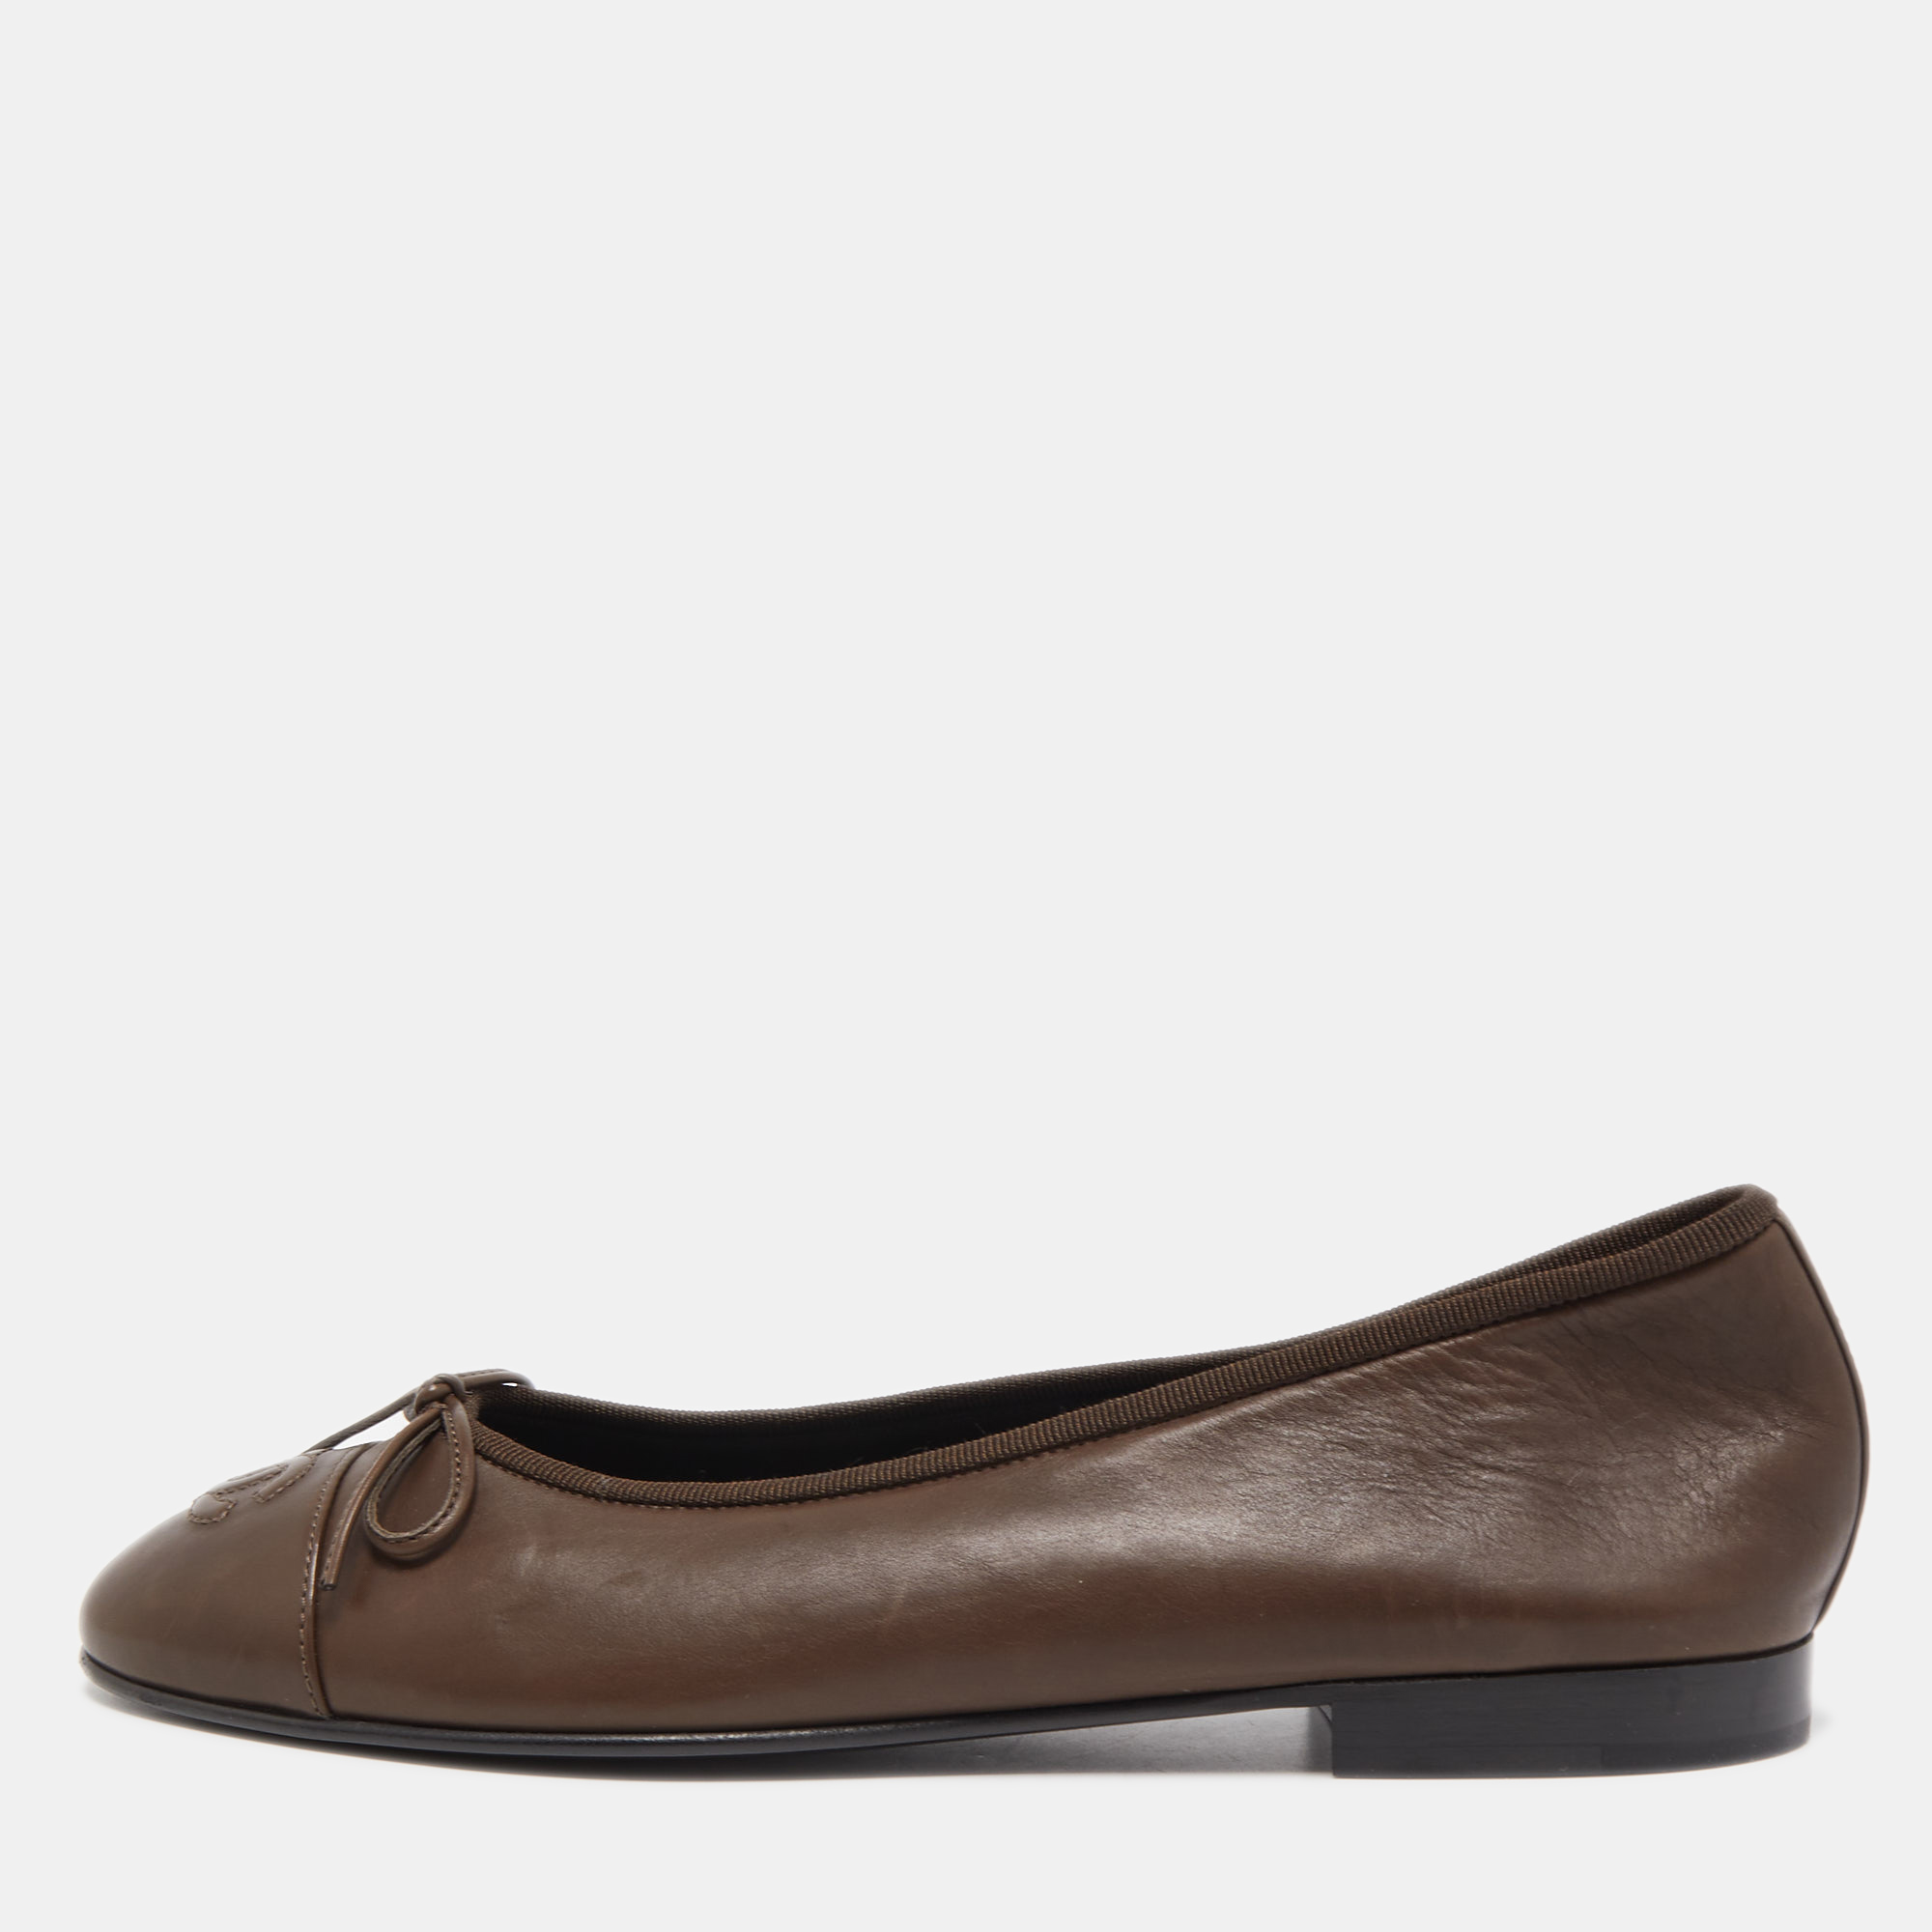 Chanel Beige/Black Leather CC Cap-Toe Bow Ballet Flats Size 38